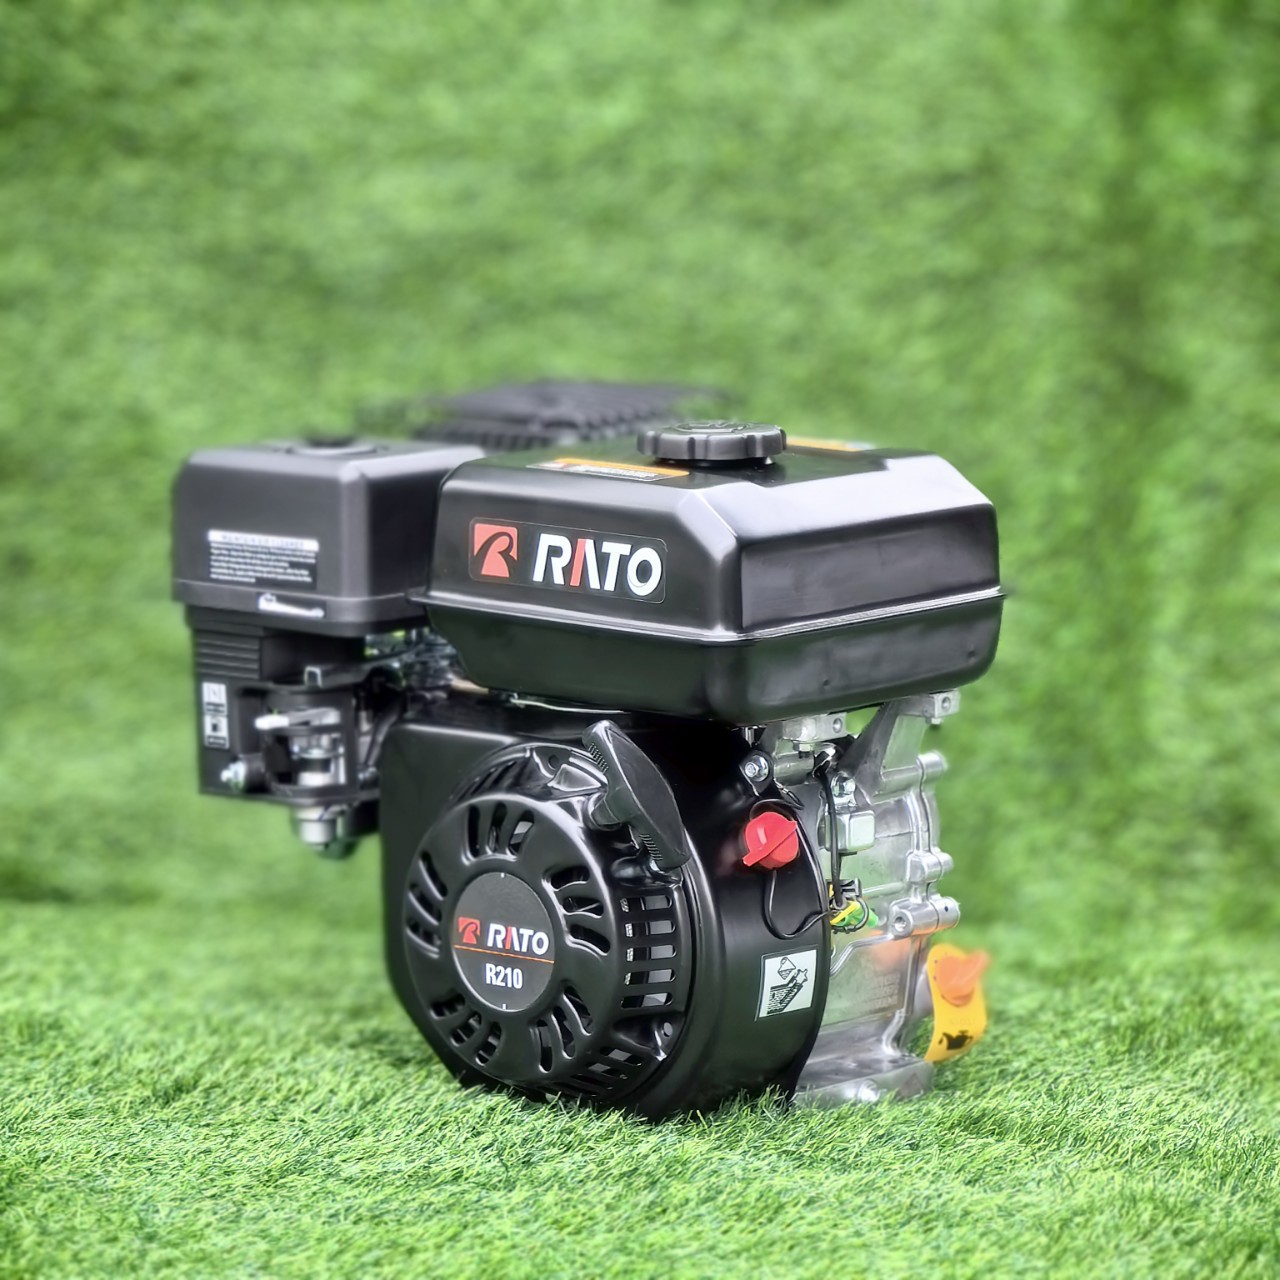 润通科技Rato170F212cc汽油发动机R210欧五排放碎枝机抹光机专用